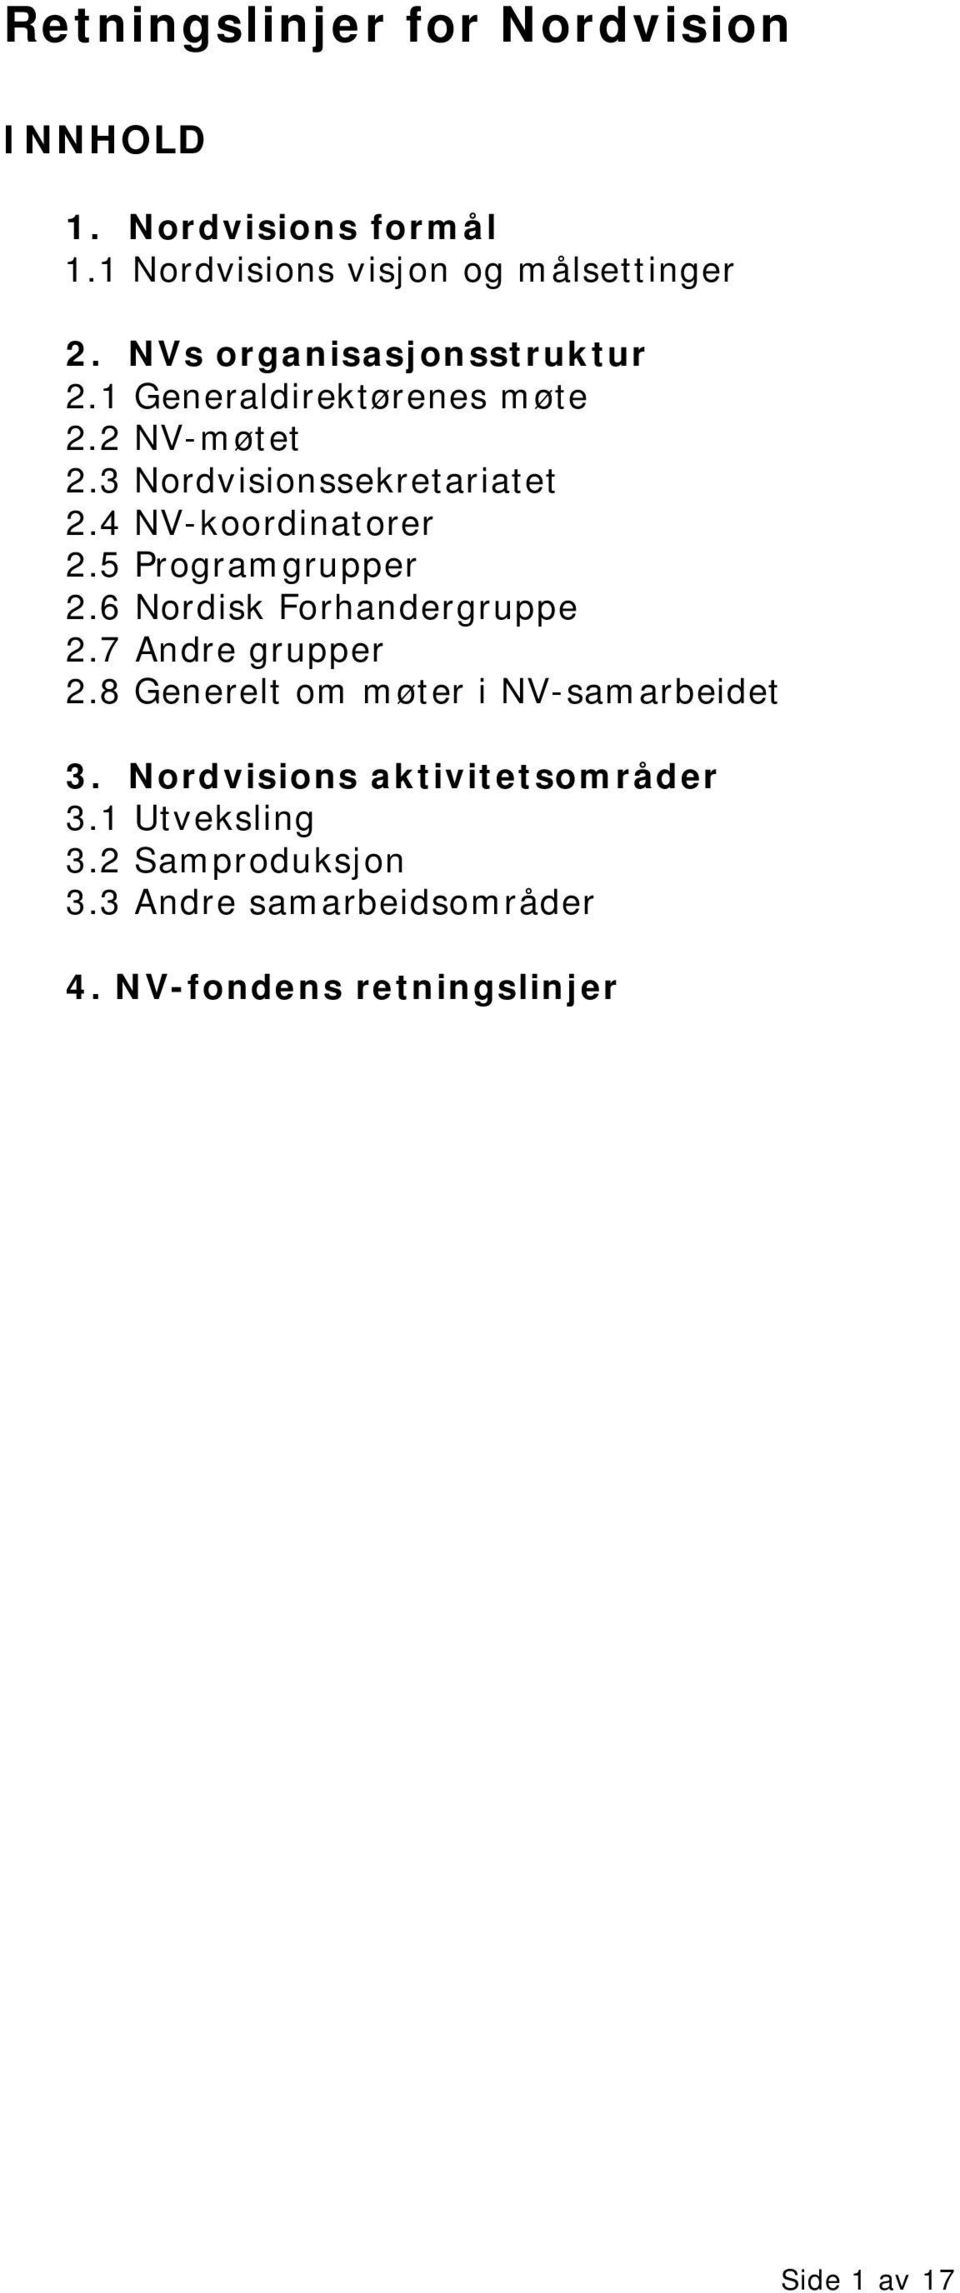 4 NV-koordinatorer 2.5 Programgrupper 2.6 Nordisk Forhandergruppe 2.7 Andre grupper 2.